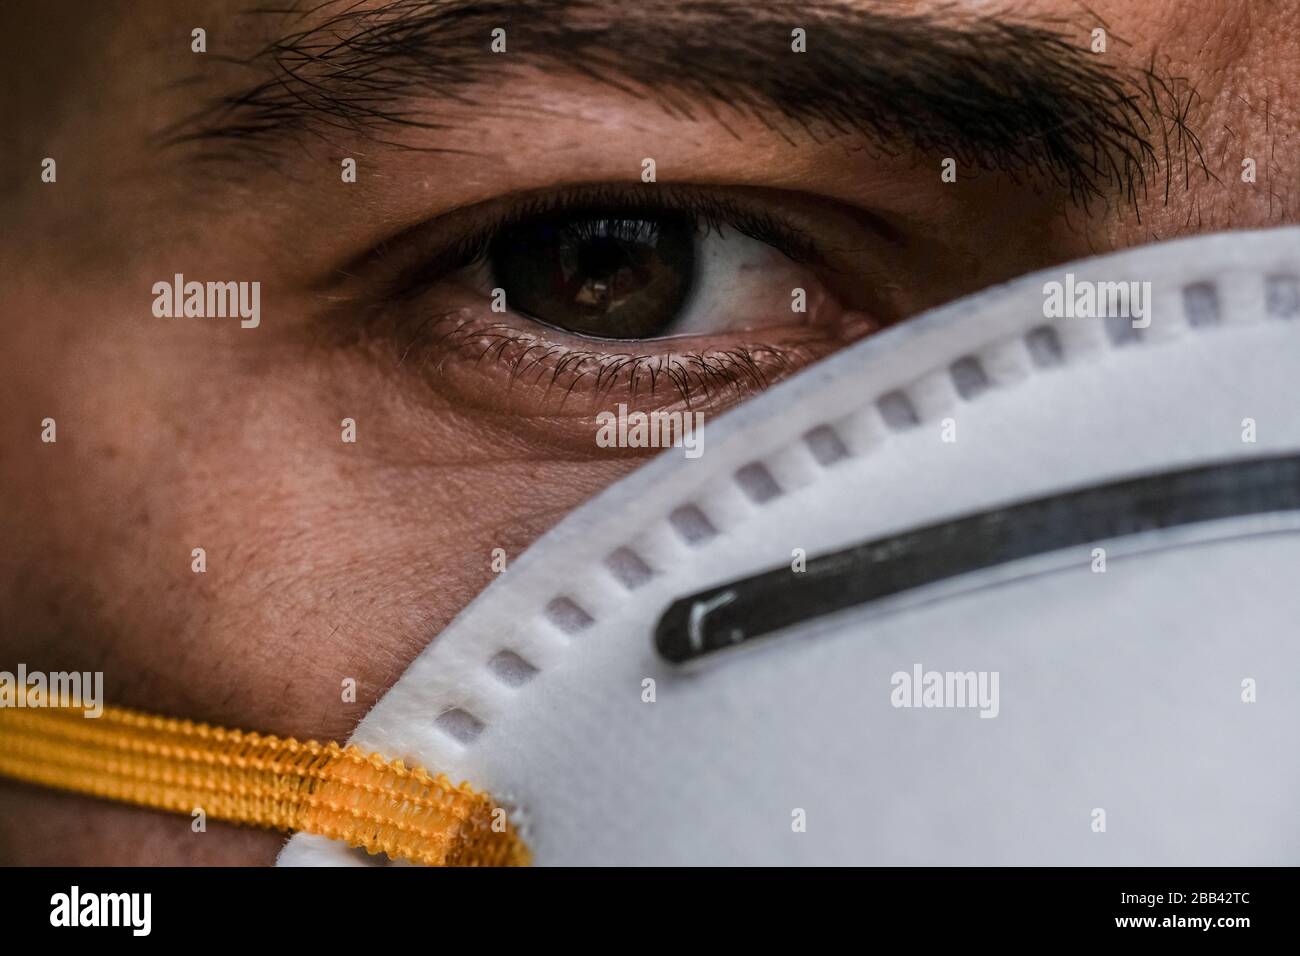 Uomo occhio ritratto dettagli medicazione corona virus covid-19 maschera protettiva, malattia Foto Stock